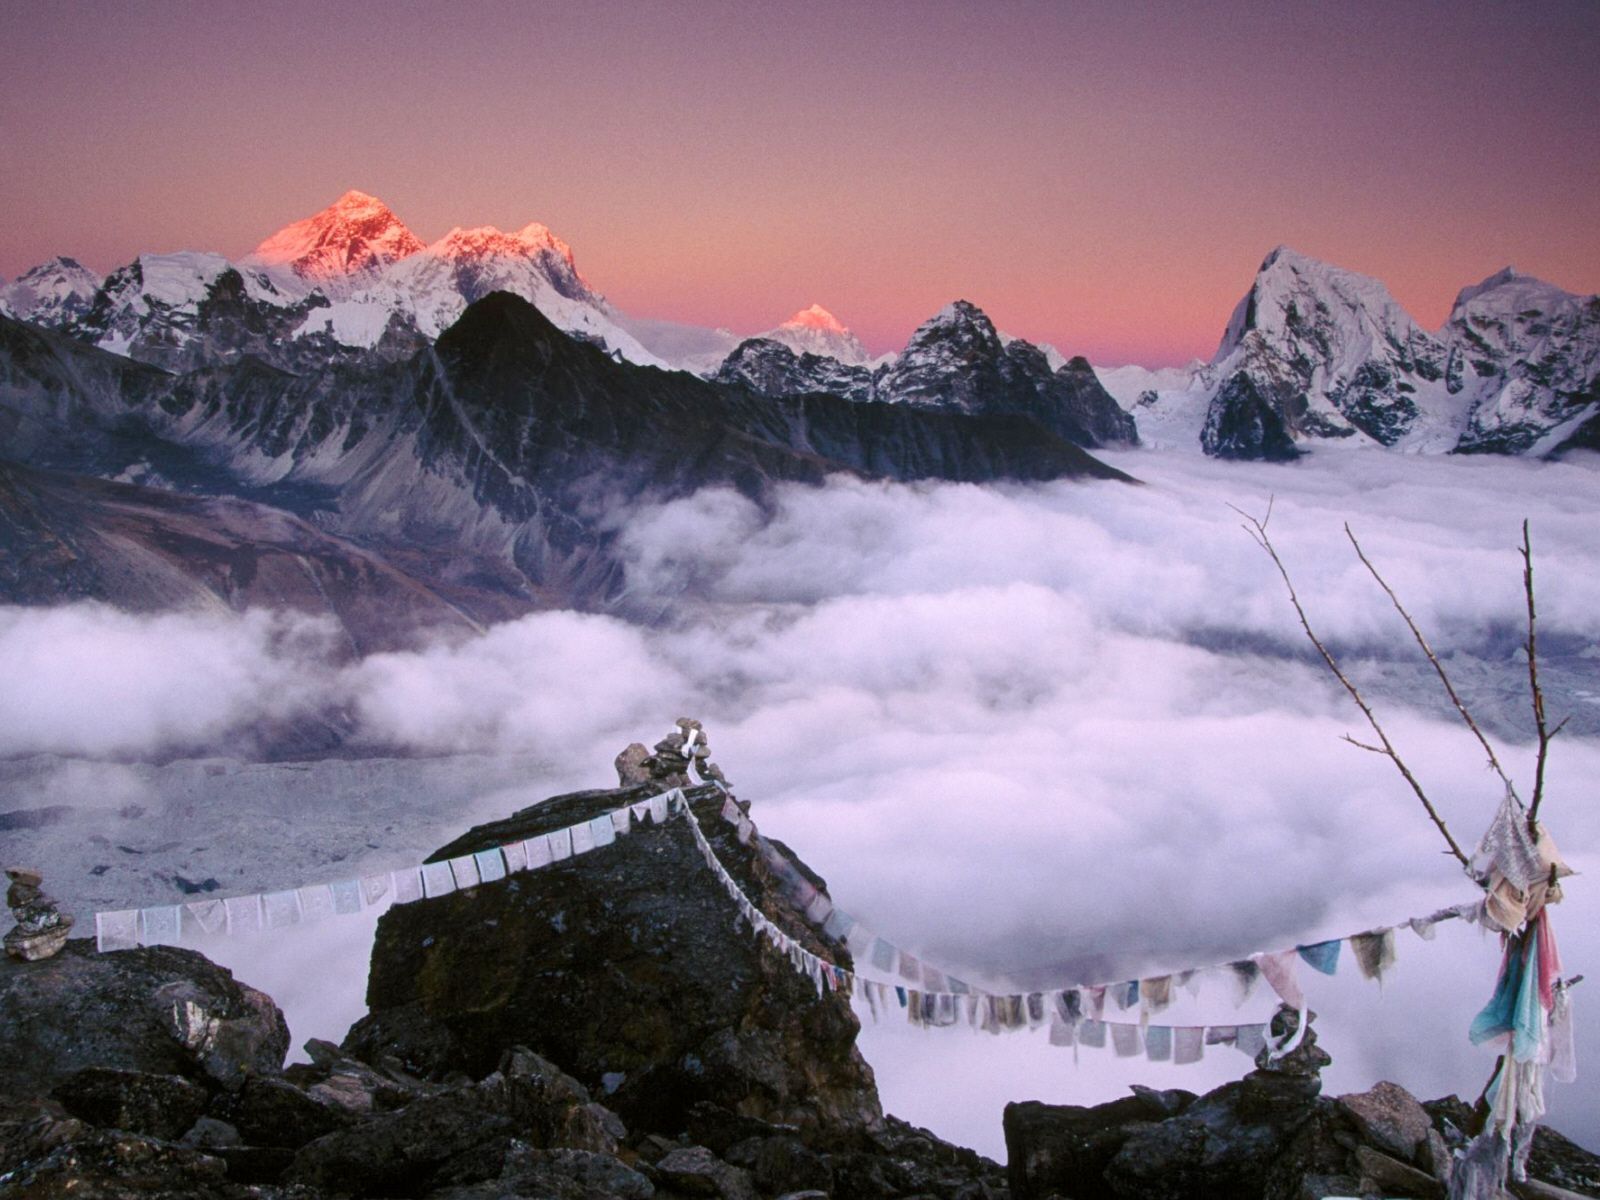 عکس روح بخش معابد شهر تبت بر فراز کوه های مه آلود